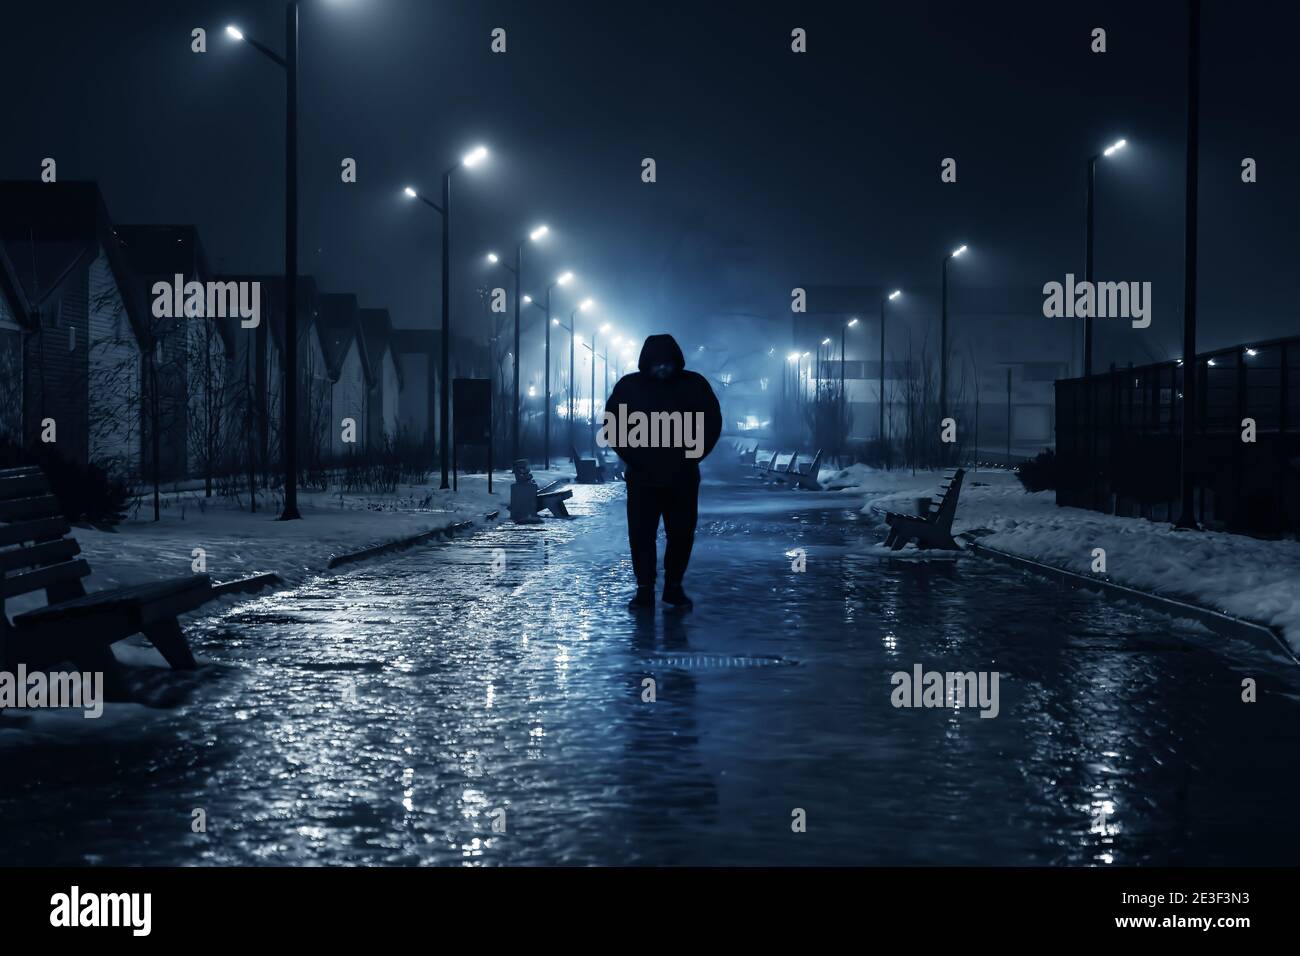 Silueta de una persona solitaria camina sobre una calle oscura y foggy iluminada con lámparas de calle, de tono azul. Foto de stock